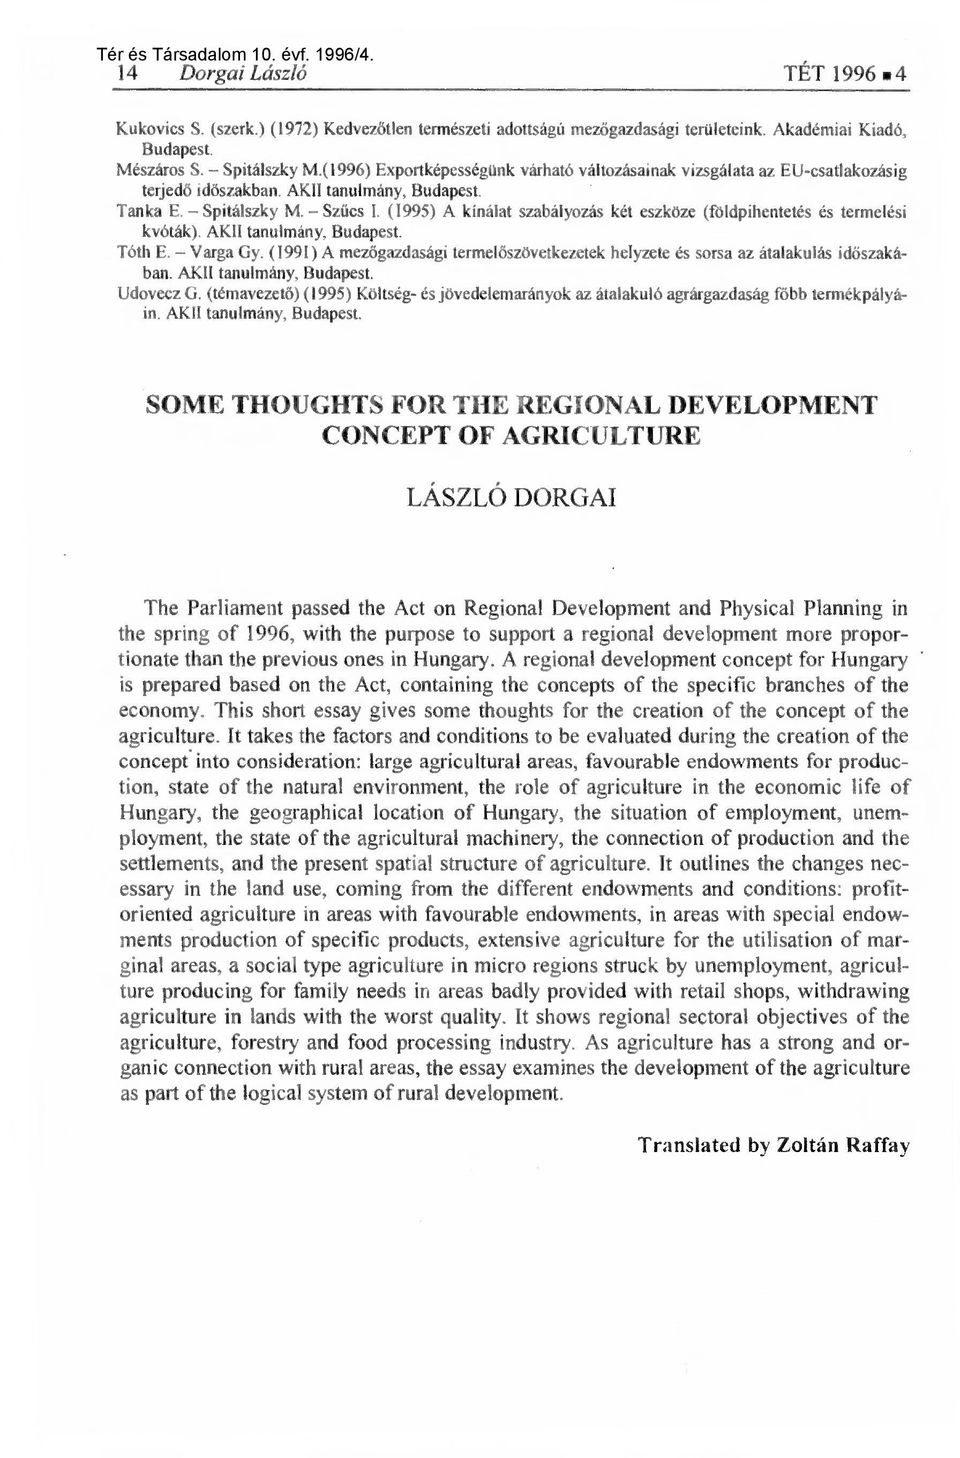 (1995) A kínálat szabályozás két eszköze (földpihentetés és termelési kvóták). AKII tanulmány, Budapest. Tóth E. Varga Gy.